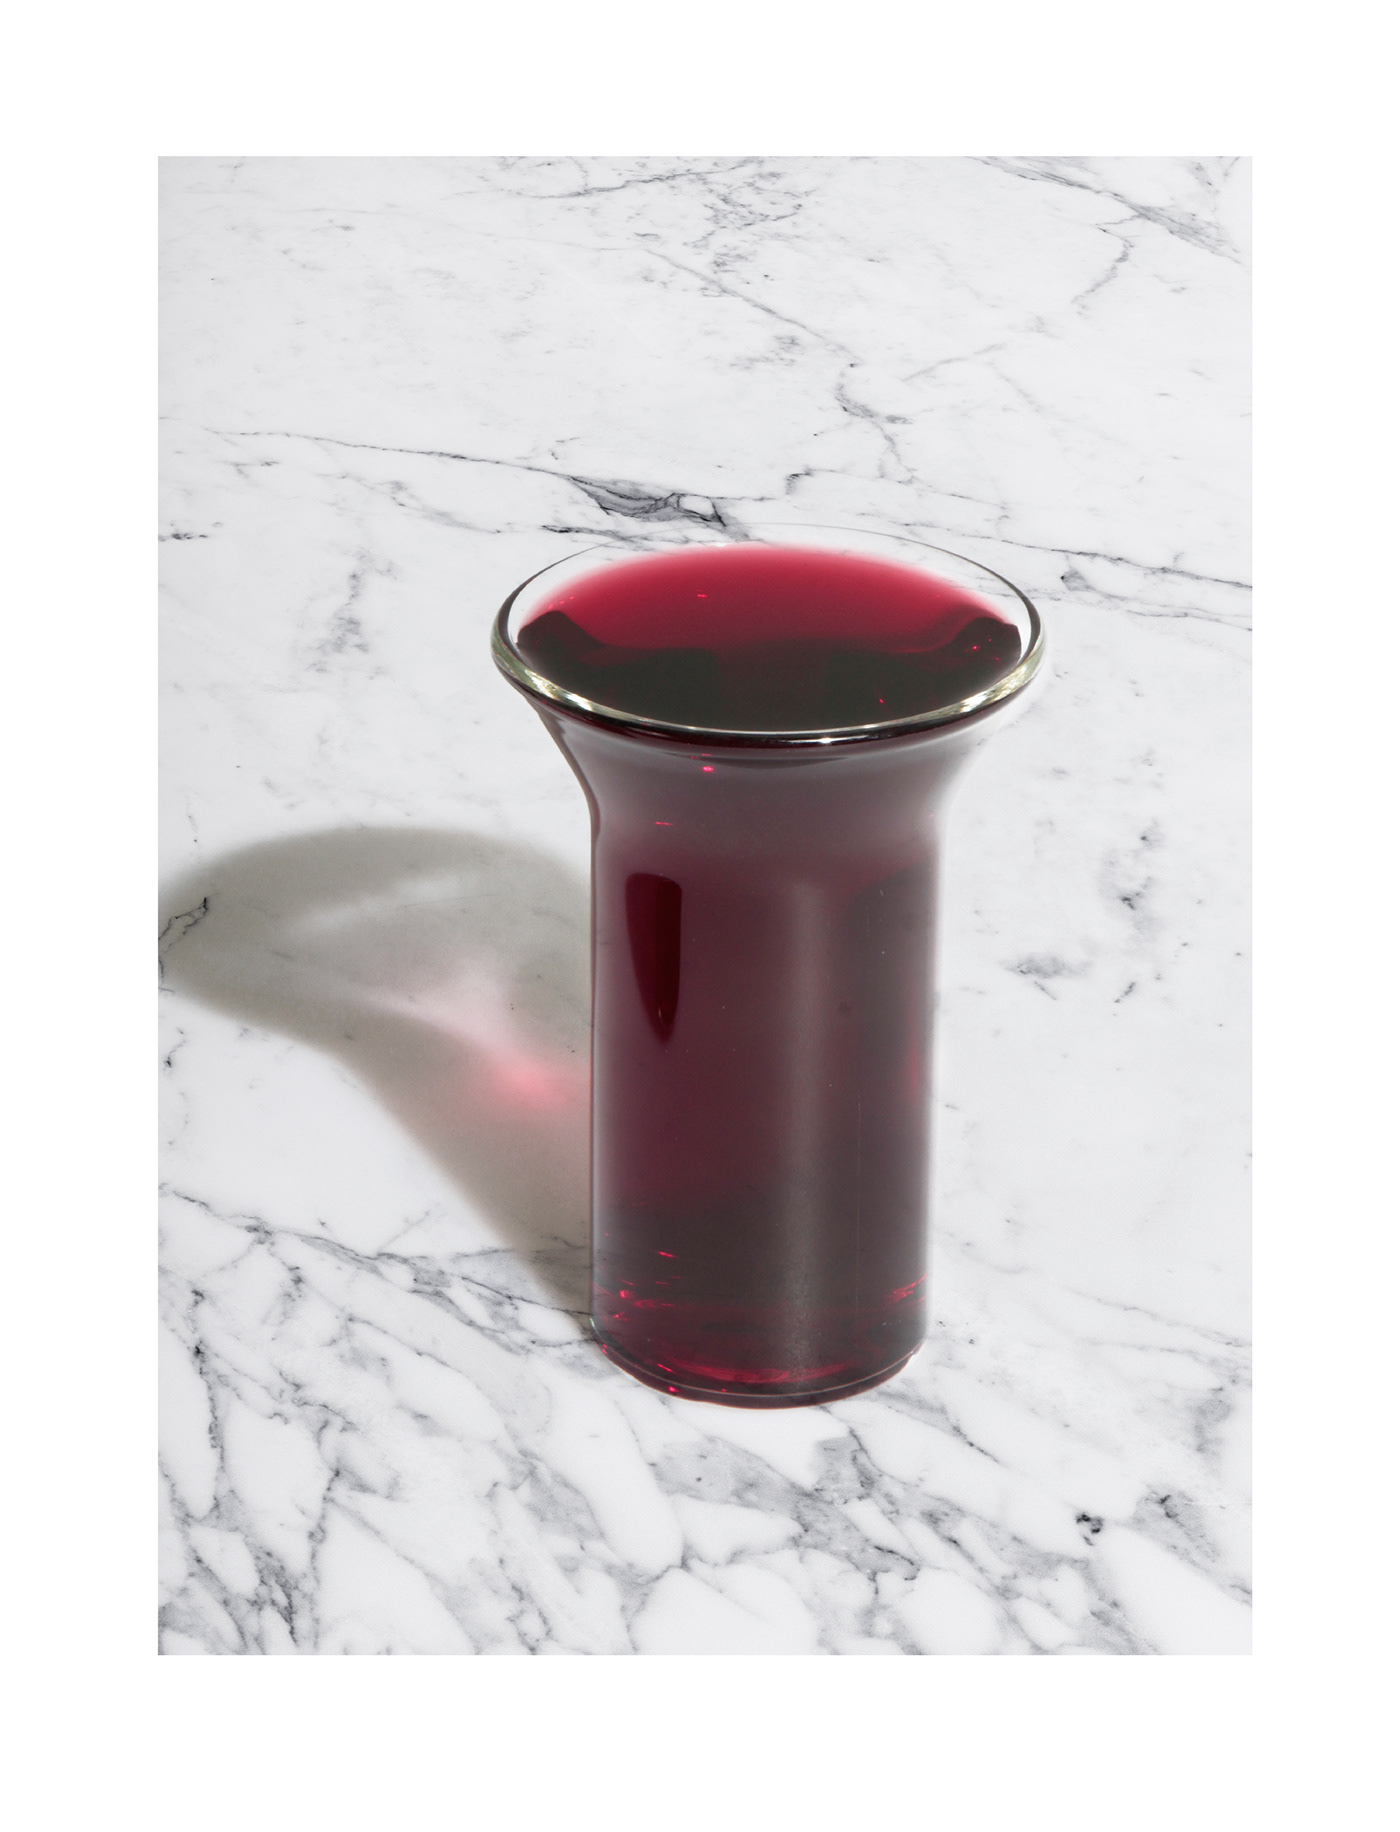 cups drink Drinkware food design glass glassblowing product snacks tableware wine